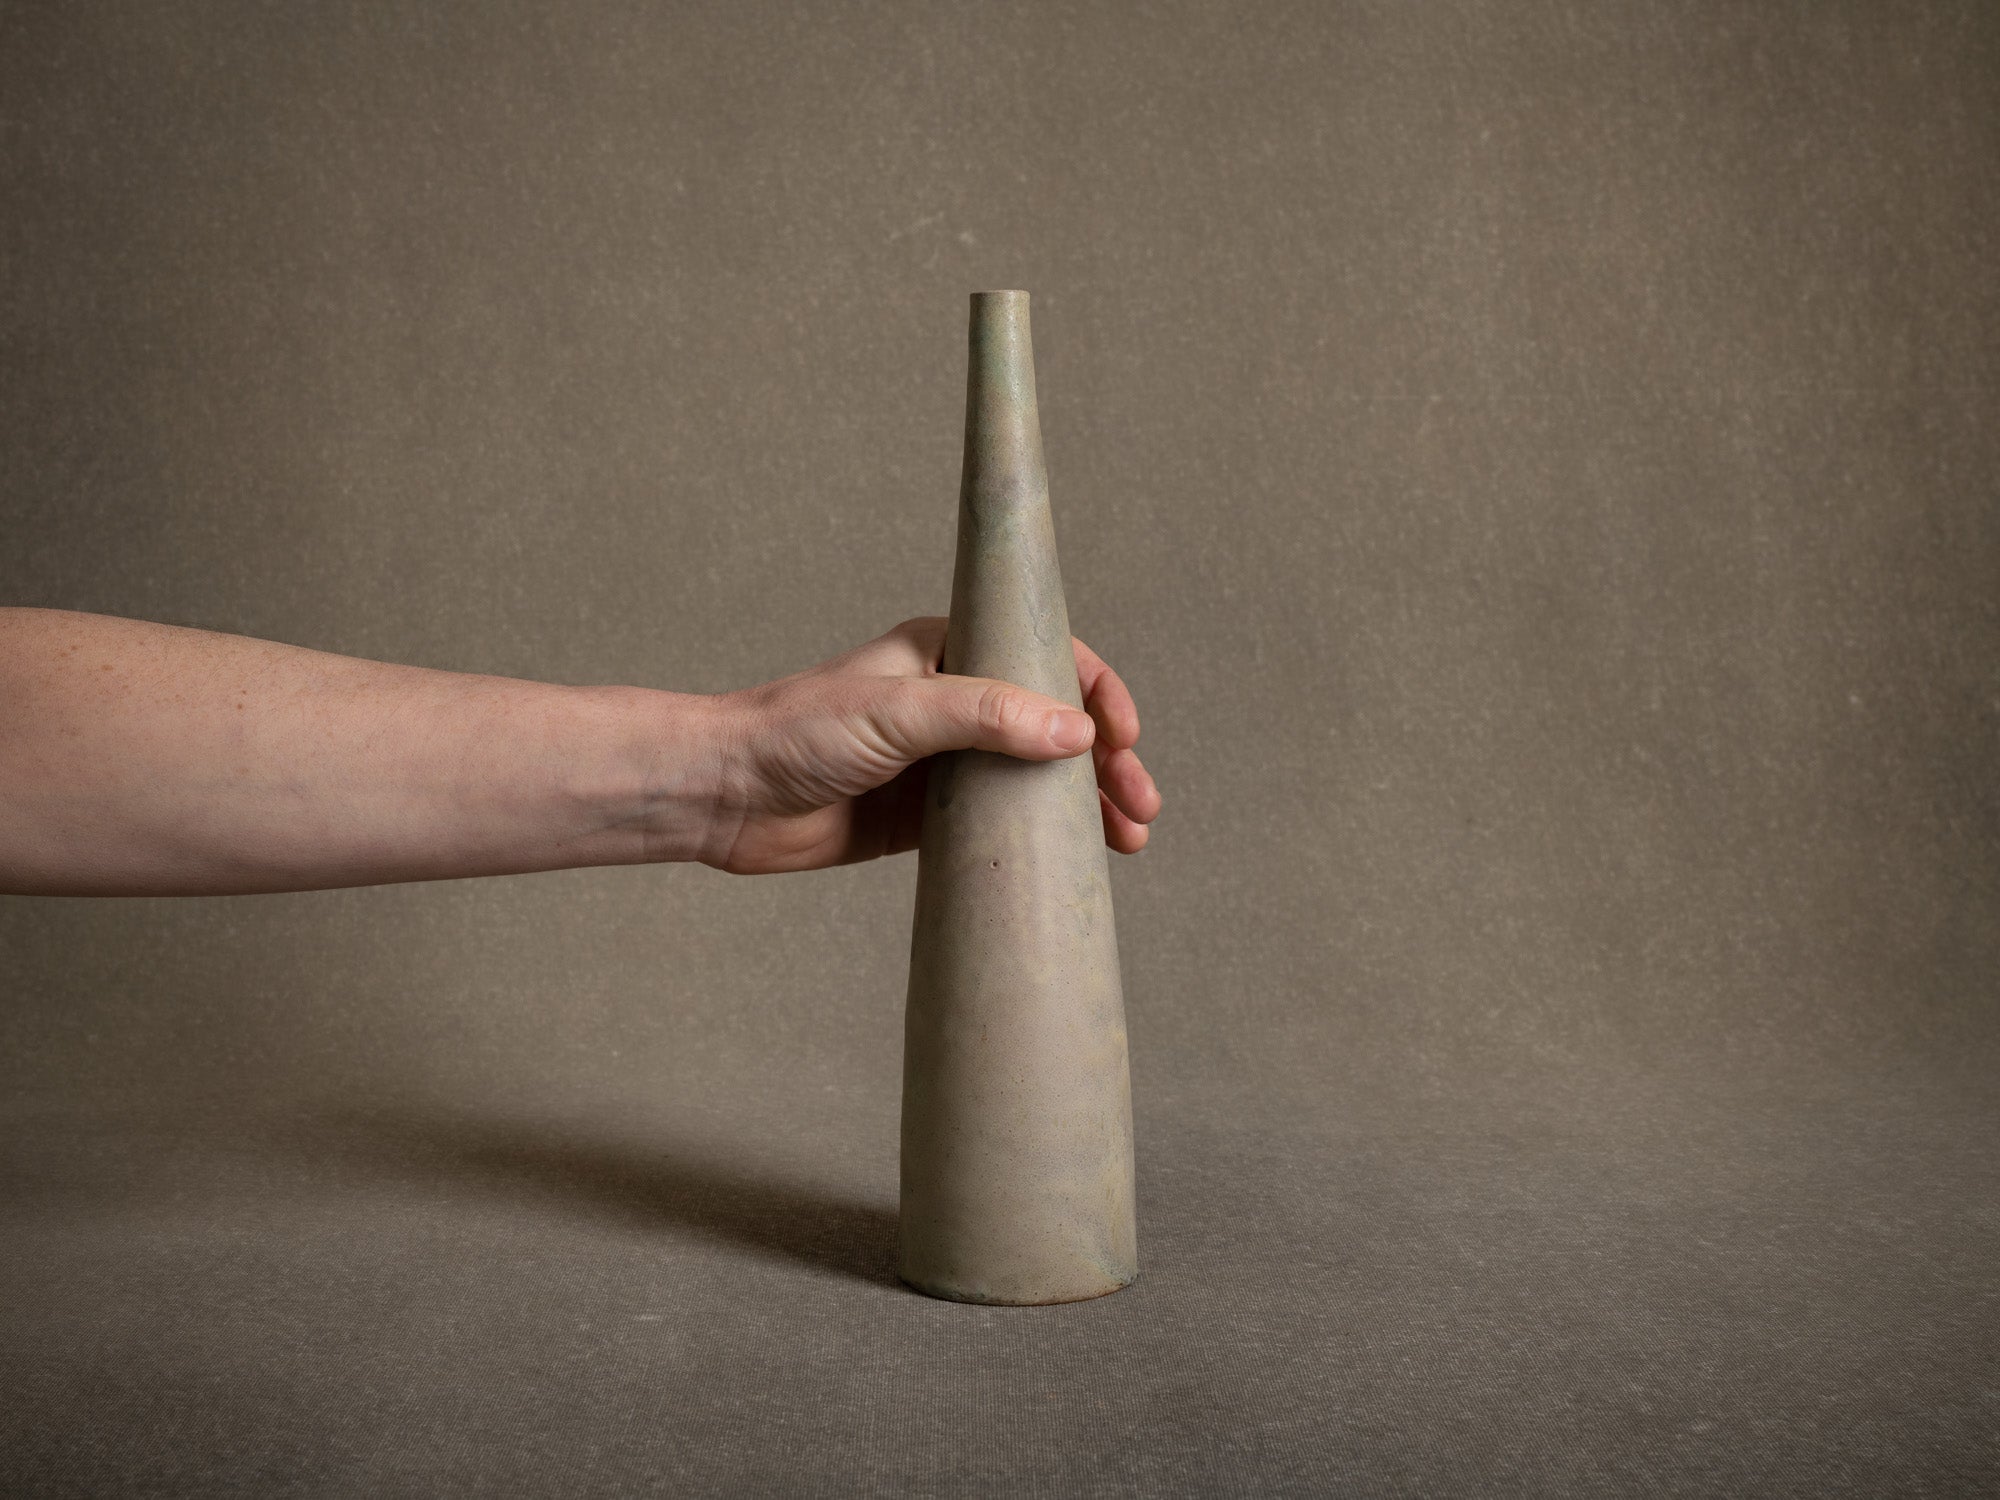 Remarquable vase fuselé en grès de Roger Jacques, France (vers 1975-80)..Oustanding vase by Roger Jacques in Saint&#x2011;Amand&#x2011;en&#x2011;Puisaye, France (circa 1975-80)